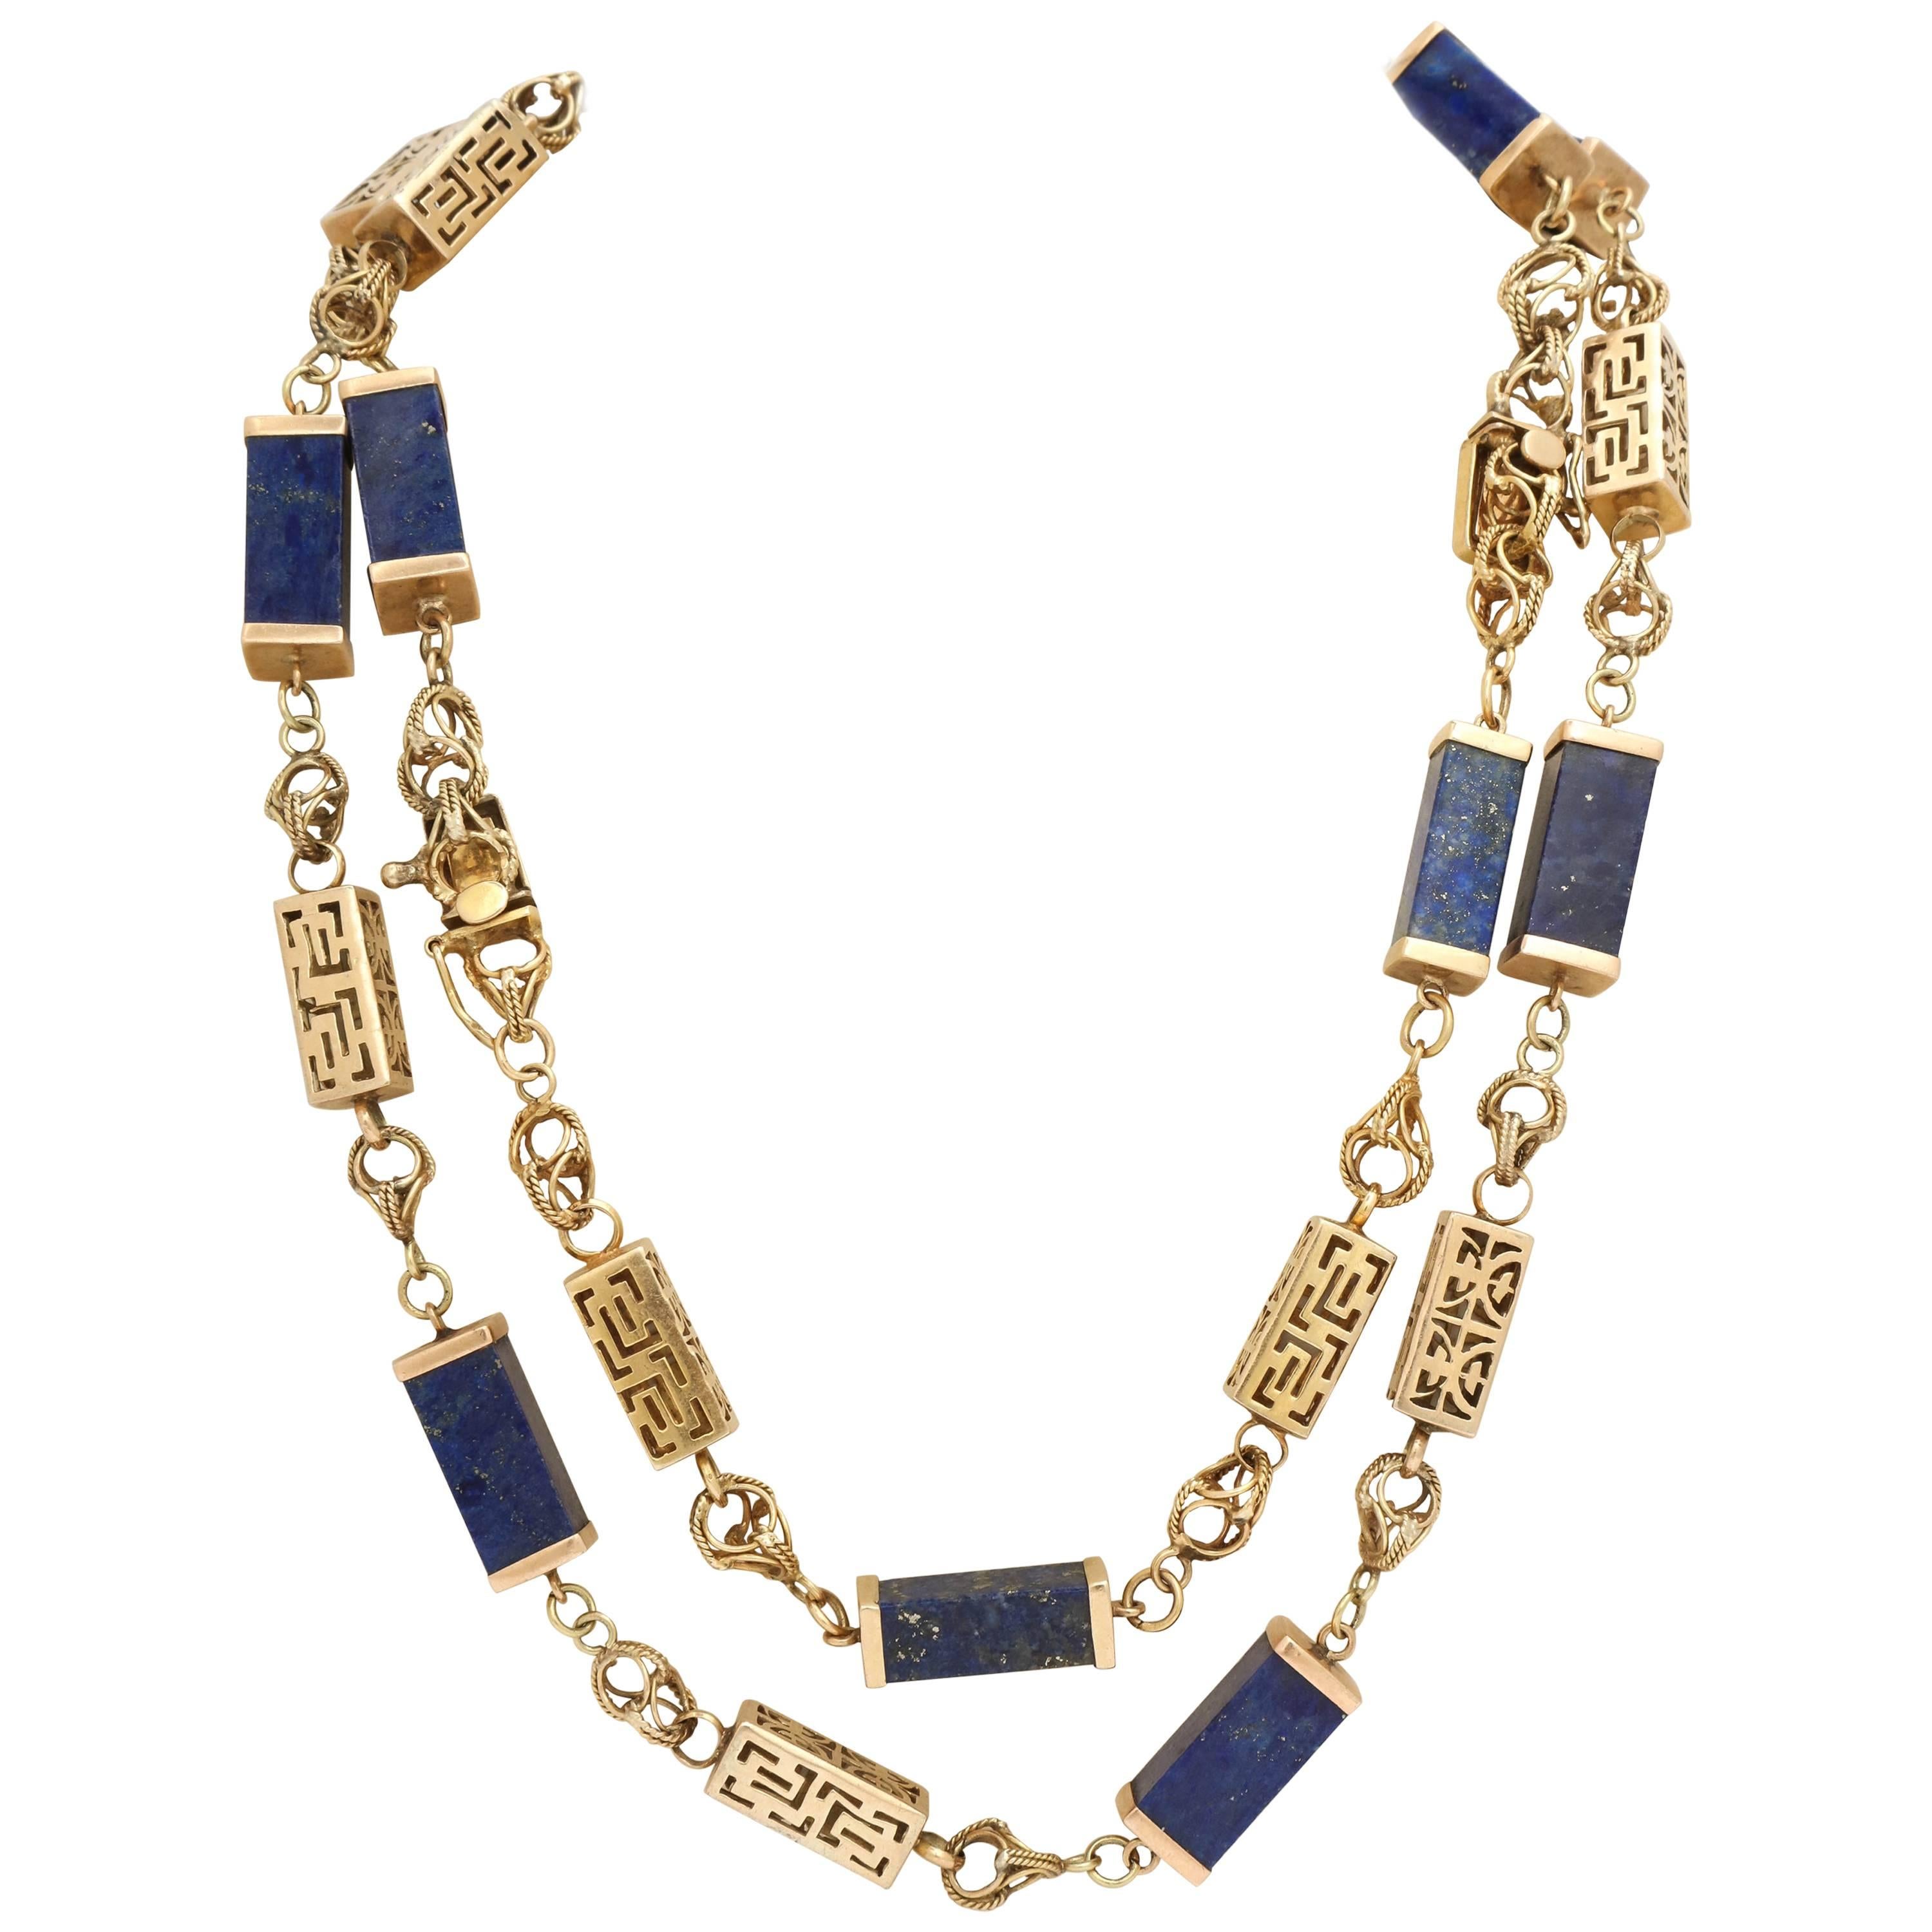 1950s Lapis Lazuli Gold Necklace Bracelet Long Chain Combination 